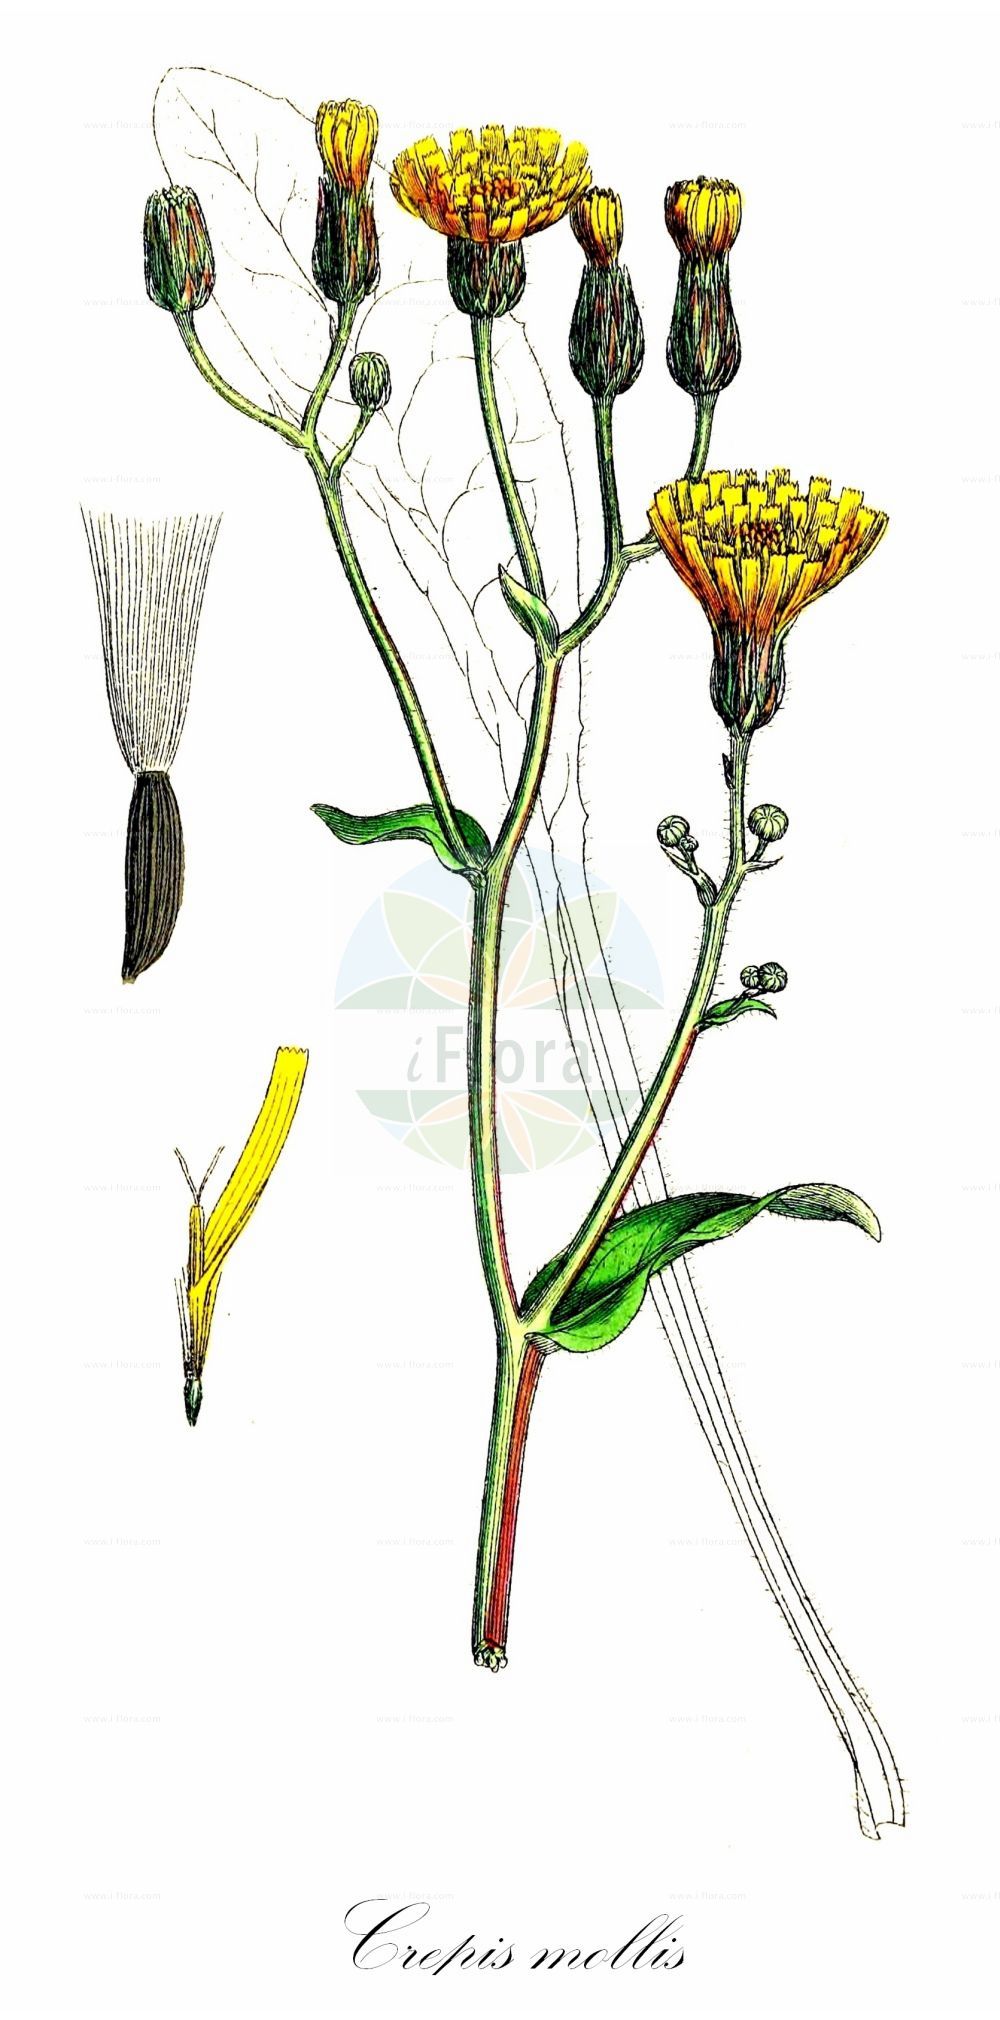 Historische Abbildung von Crepis mollis (Weichhaariger Pippau - Northern Hawk's-beard). Das Bild zeigt Blatt, Bluete, Frucht und Same. ---- Historical Drawing of Crepis mollis (Weichhaariger Pippau - Northern Hawk's-beard). The image is showing leaf, flower, fruit and seed.(Crepis mollis,Weichhaariger Pippau,Northern Hawk's-beard,Crepis croatica,Crepis mollis,Crepis planitierum,Hieracium croaticum,Hieracium molle,Weichhaariger Pippau,Abgebissener Weichhaariger Pippau,Gewoehnlicher Weichhaariger Pippau,Teufelsabbissblaettriger Weicher Pippau,Northern Hawk's-beard,Crepis,Pippau,Hawk's-beard,Asteraceae,Korbblütengewächse,Daisy family,Blatt,Bluete,Frucht,Same,leaf,flower,fruit,seed,Sowerby (1790-1813))